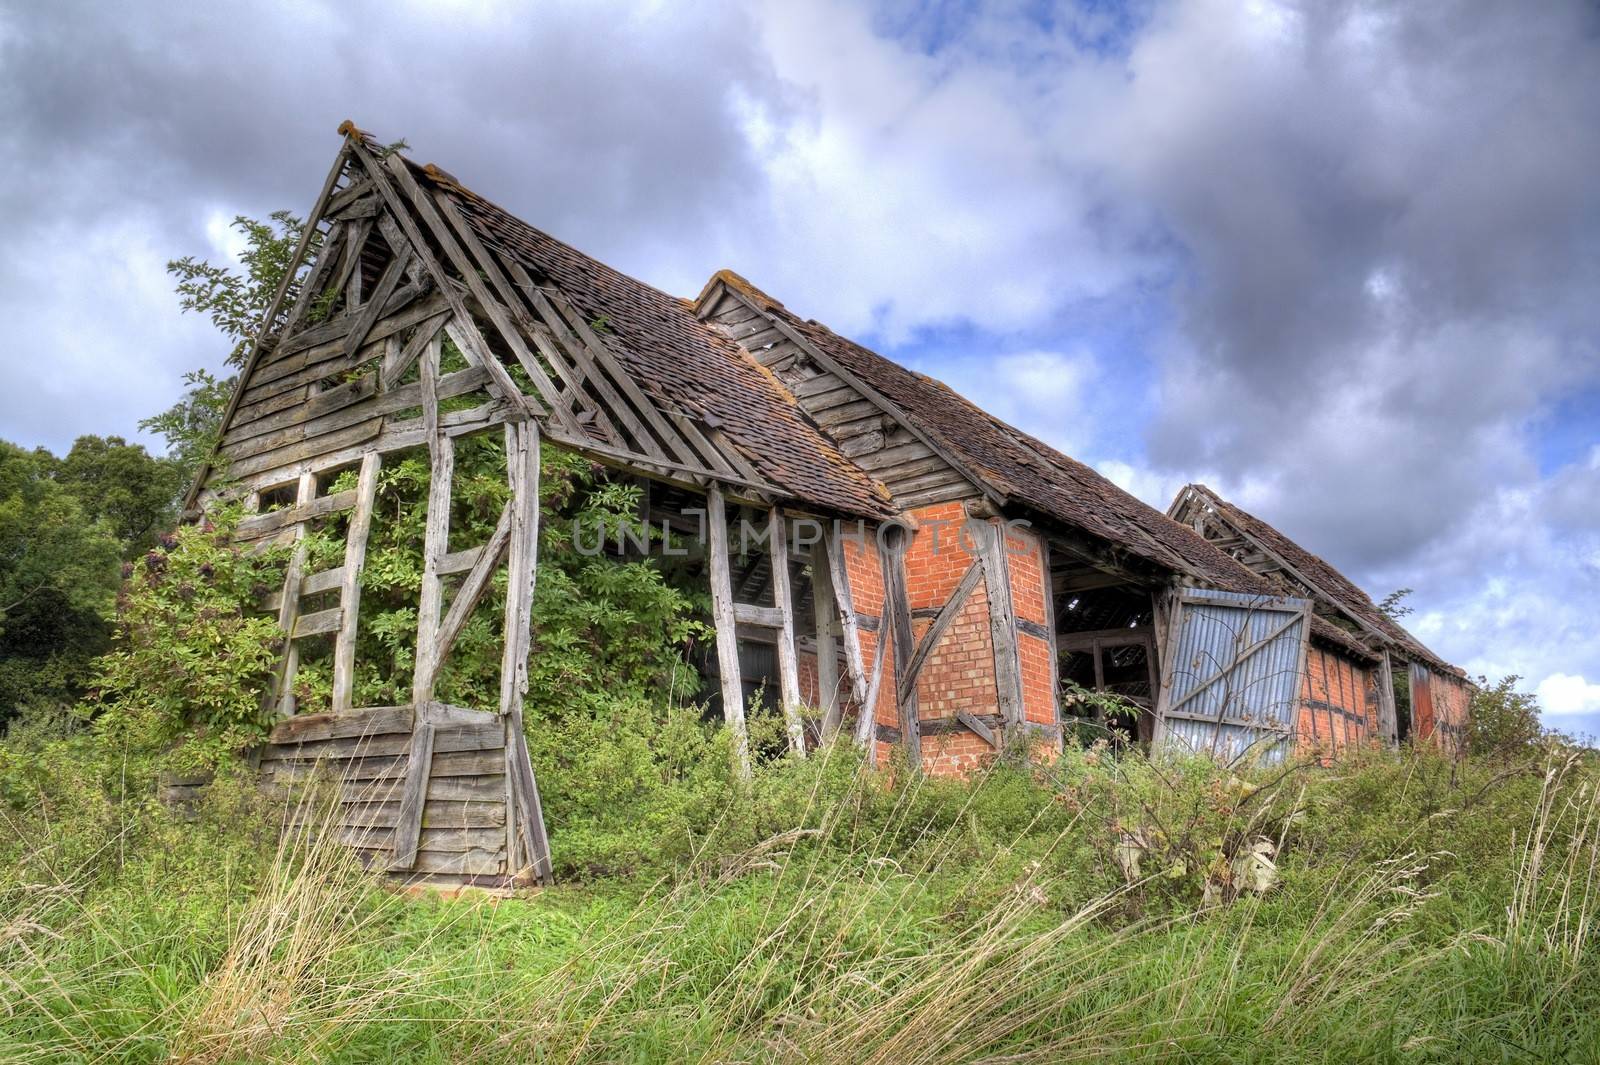 Overgrown old barn, Warwickshire, England.